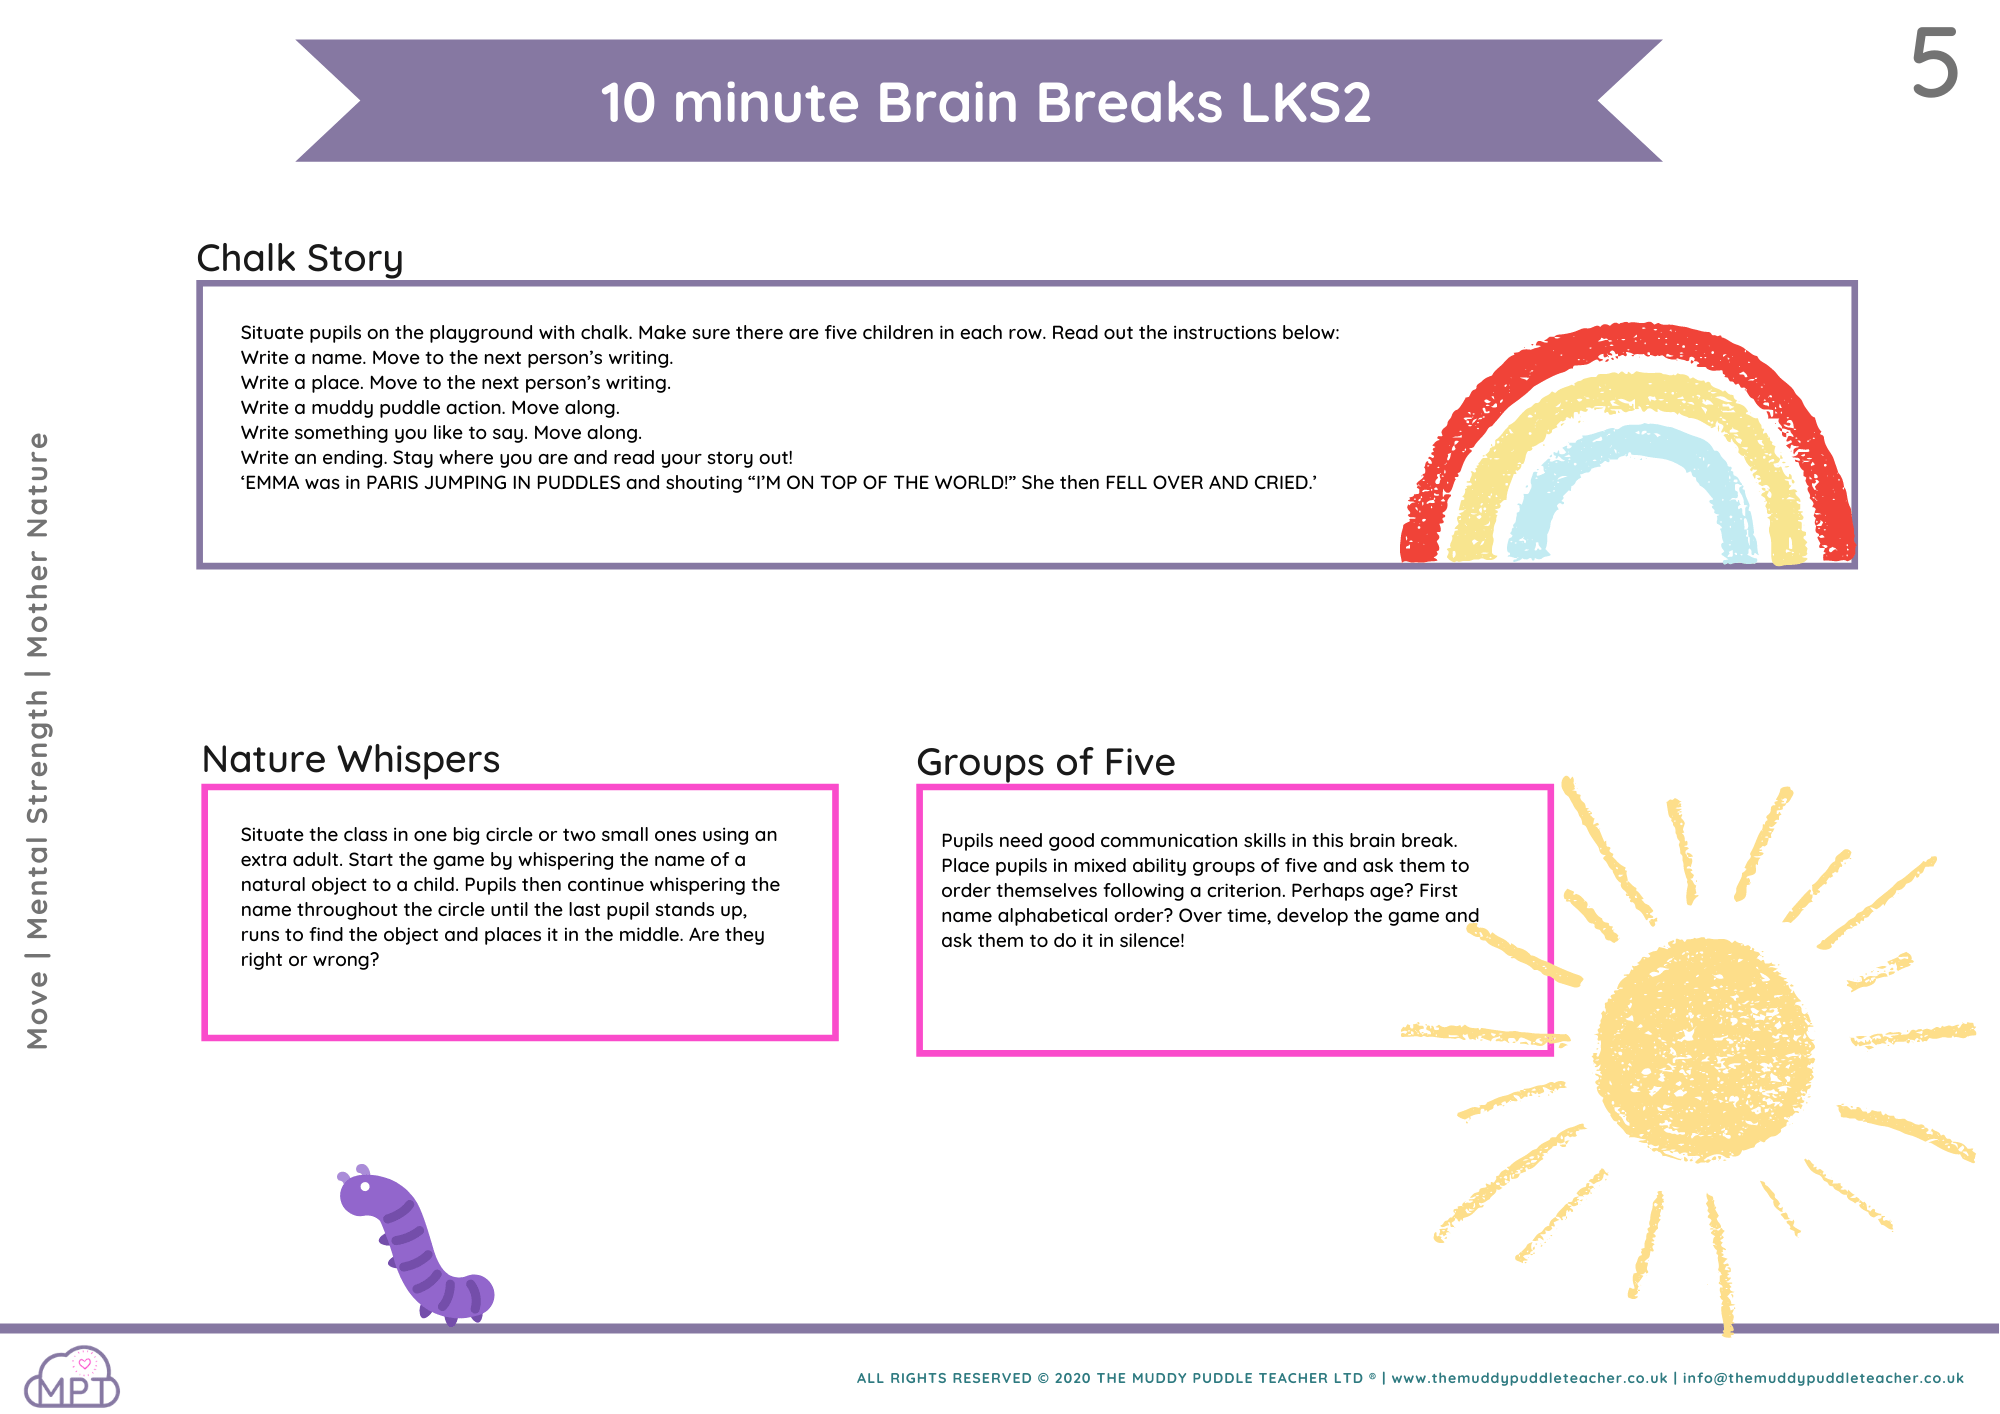 LKS2 brain breaks